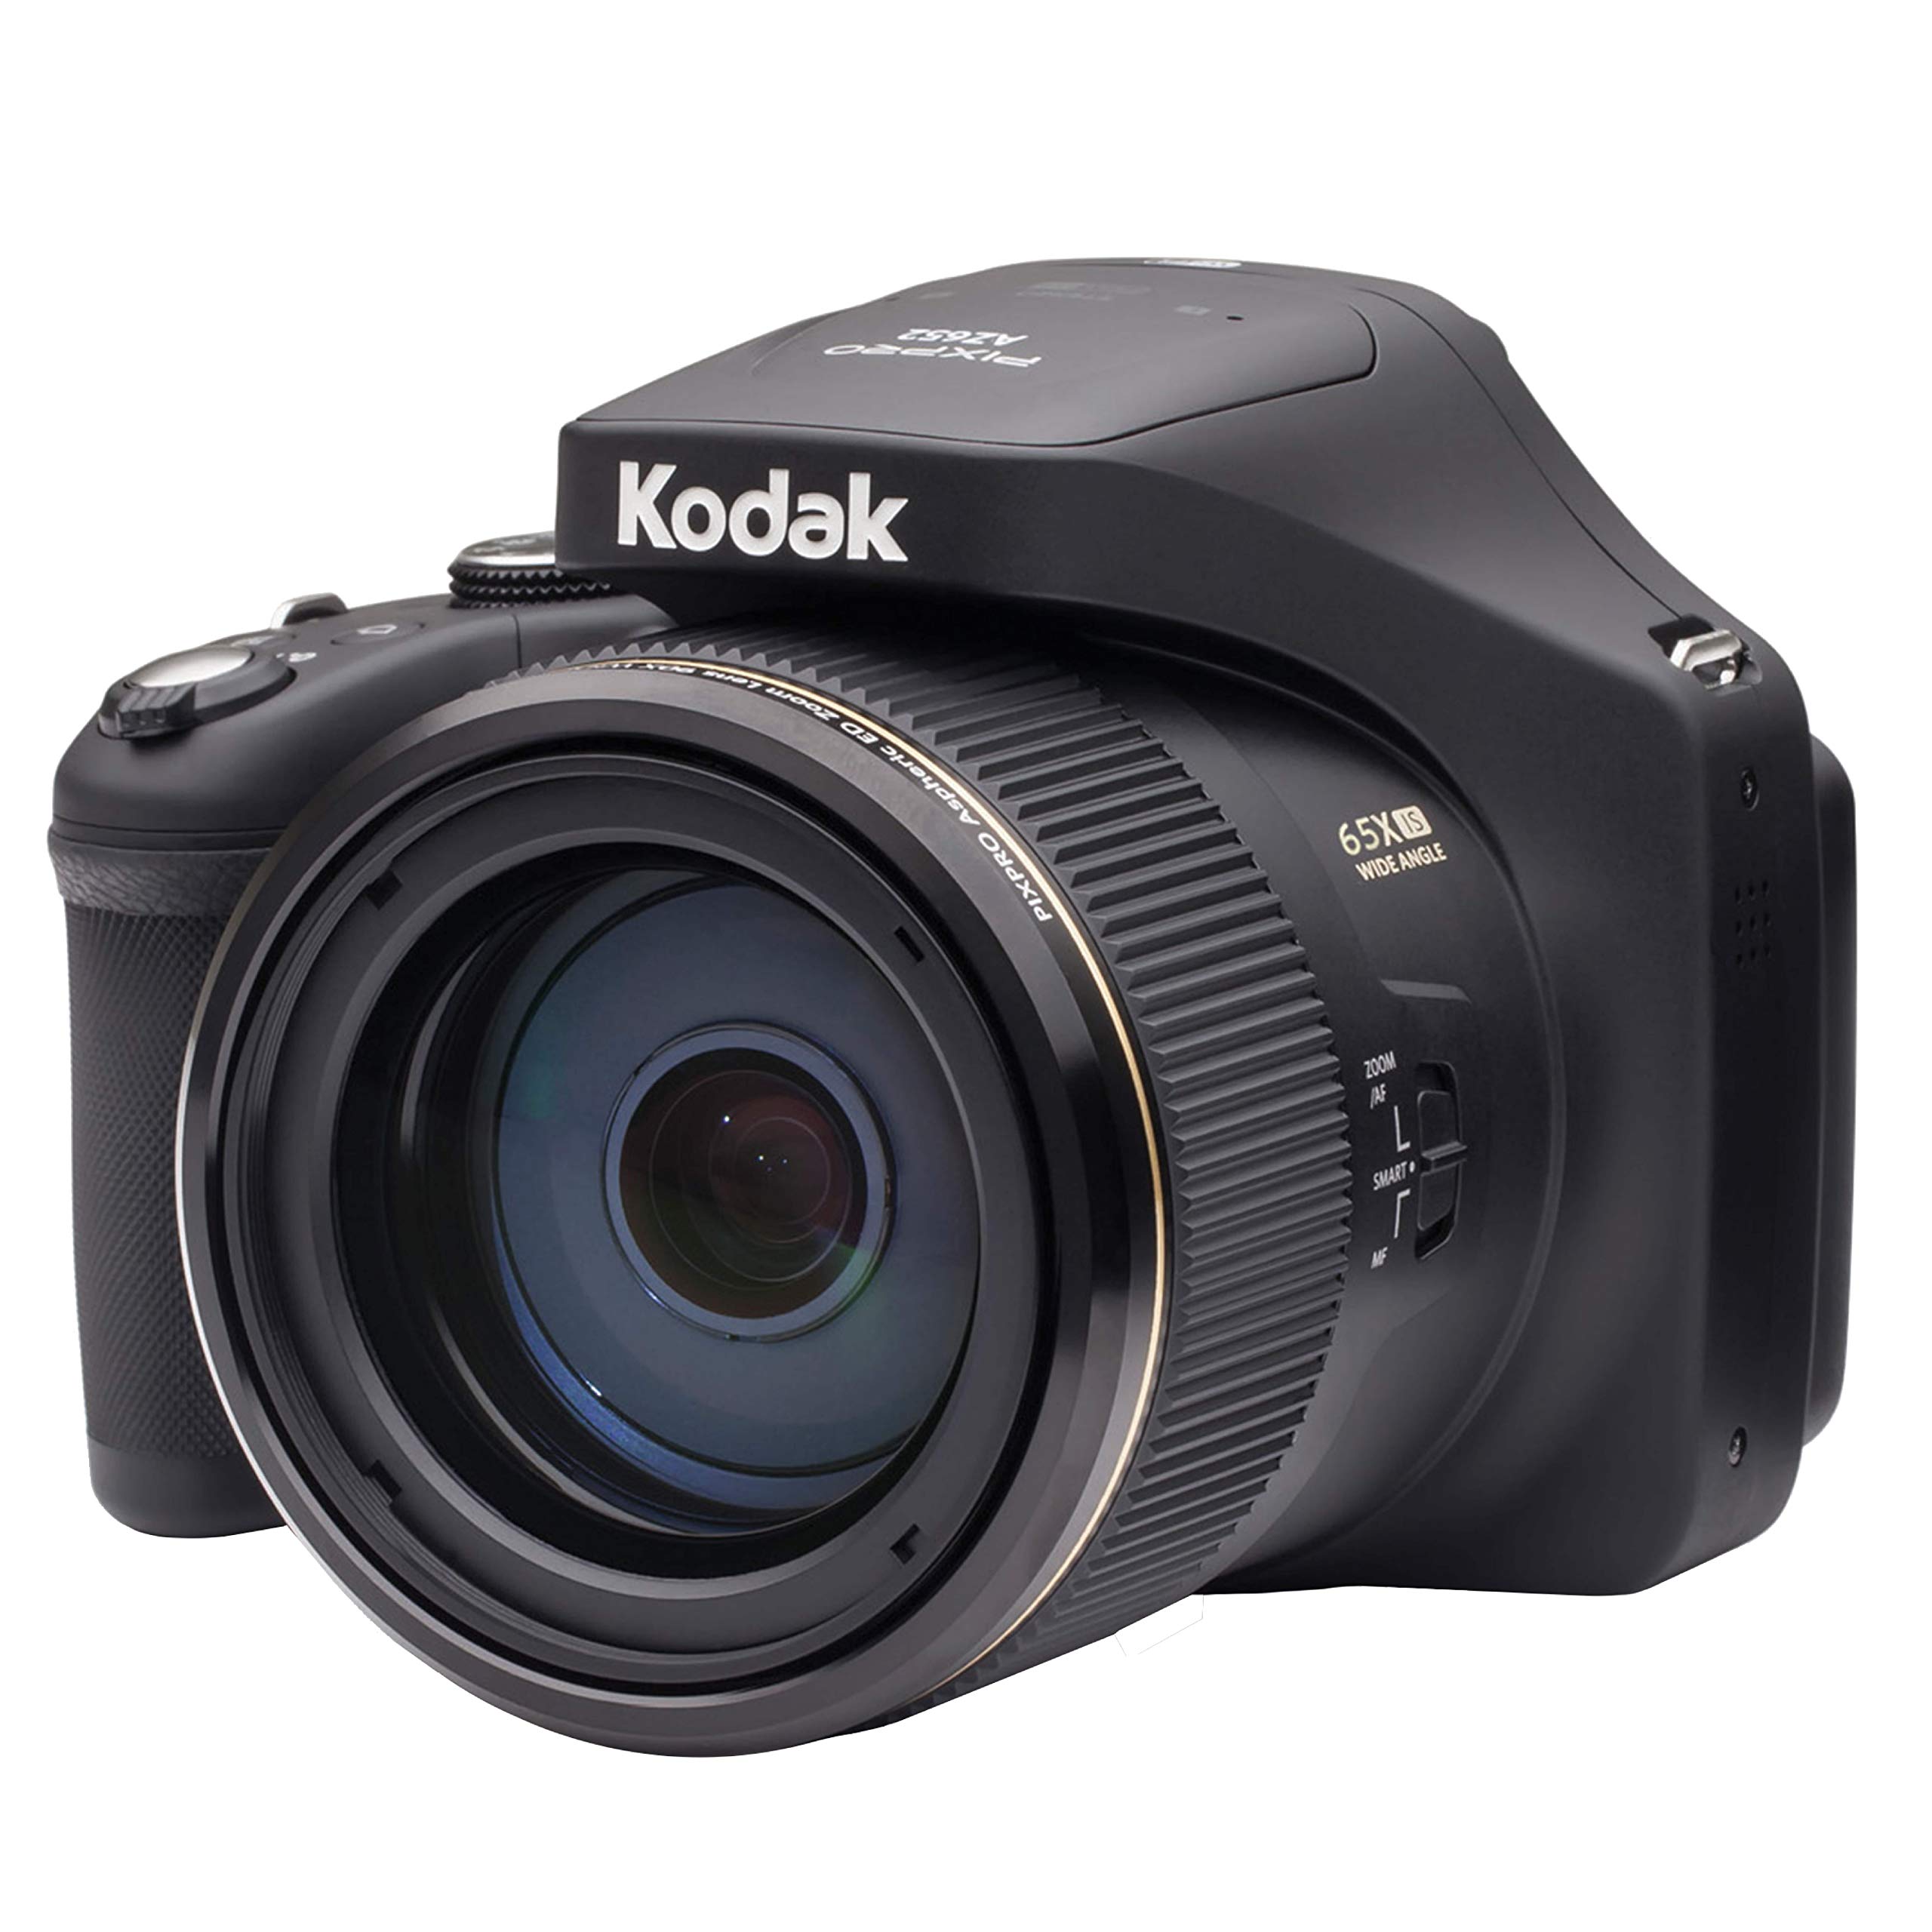 Kodak Цифровая камера PIXPRO Astro Zoom AZ652-BK 20 МП с 65-кратным оптическим зумом и 3-дюймовым ЖК-дисплеем (черный)